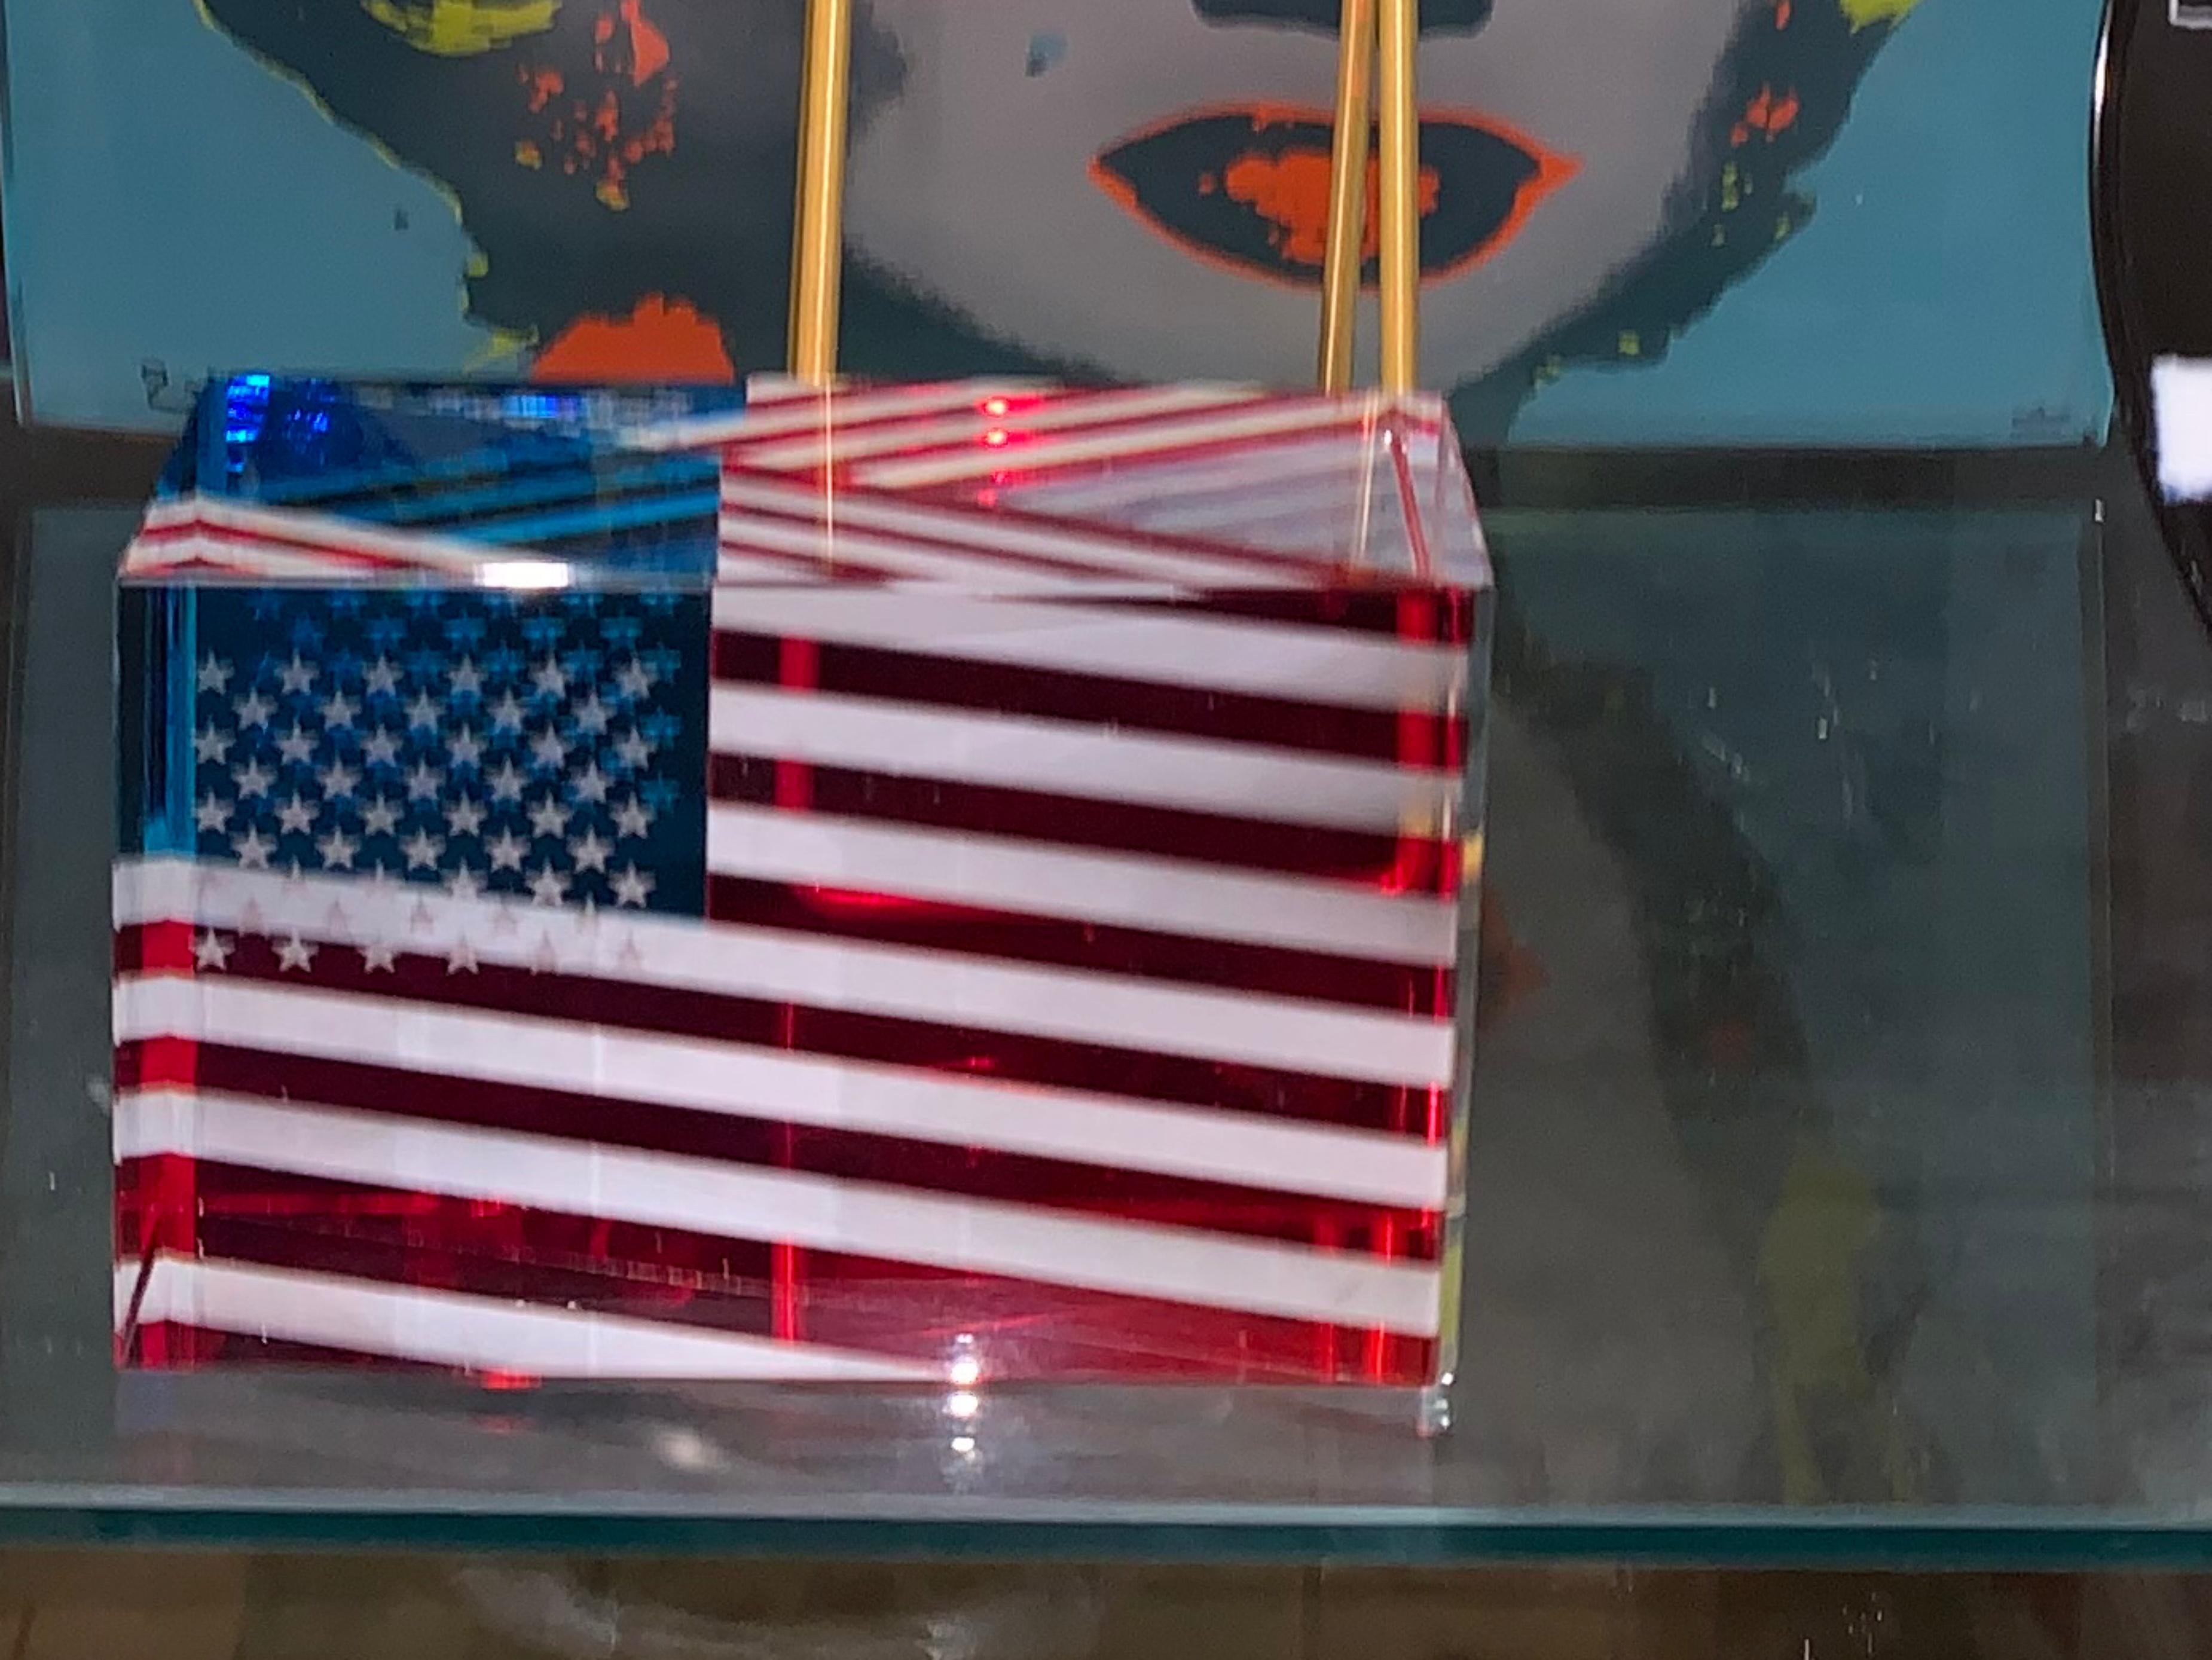 JAN MARES
Jan Mares (tchèque, 1953-2005) 
drapeau américain en verre 3-D, 2002
Verre taillé, poli et gravé
3 × 5 × 2 pouces
signature inc inc inc inc inc inc et date
